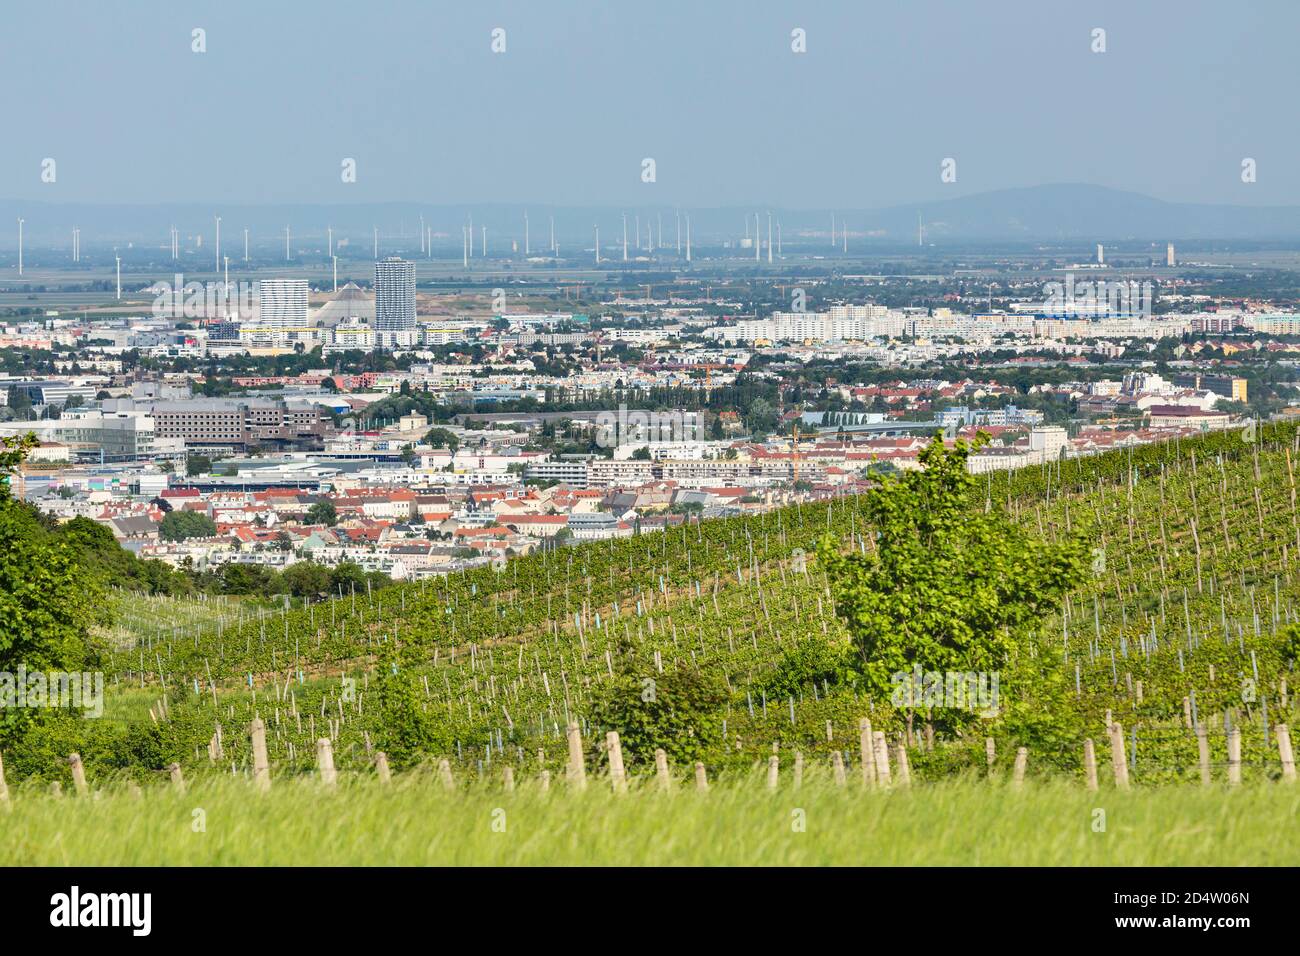 VIENA - 6 DE MAYO: Vista desde una colina de viñedos a las partes nororientales de Viena, Austria con turbinas de viento en el fondo el 6 de mayo de 2018 Foto de stock